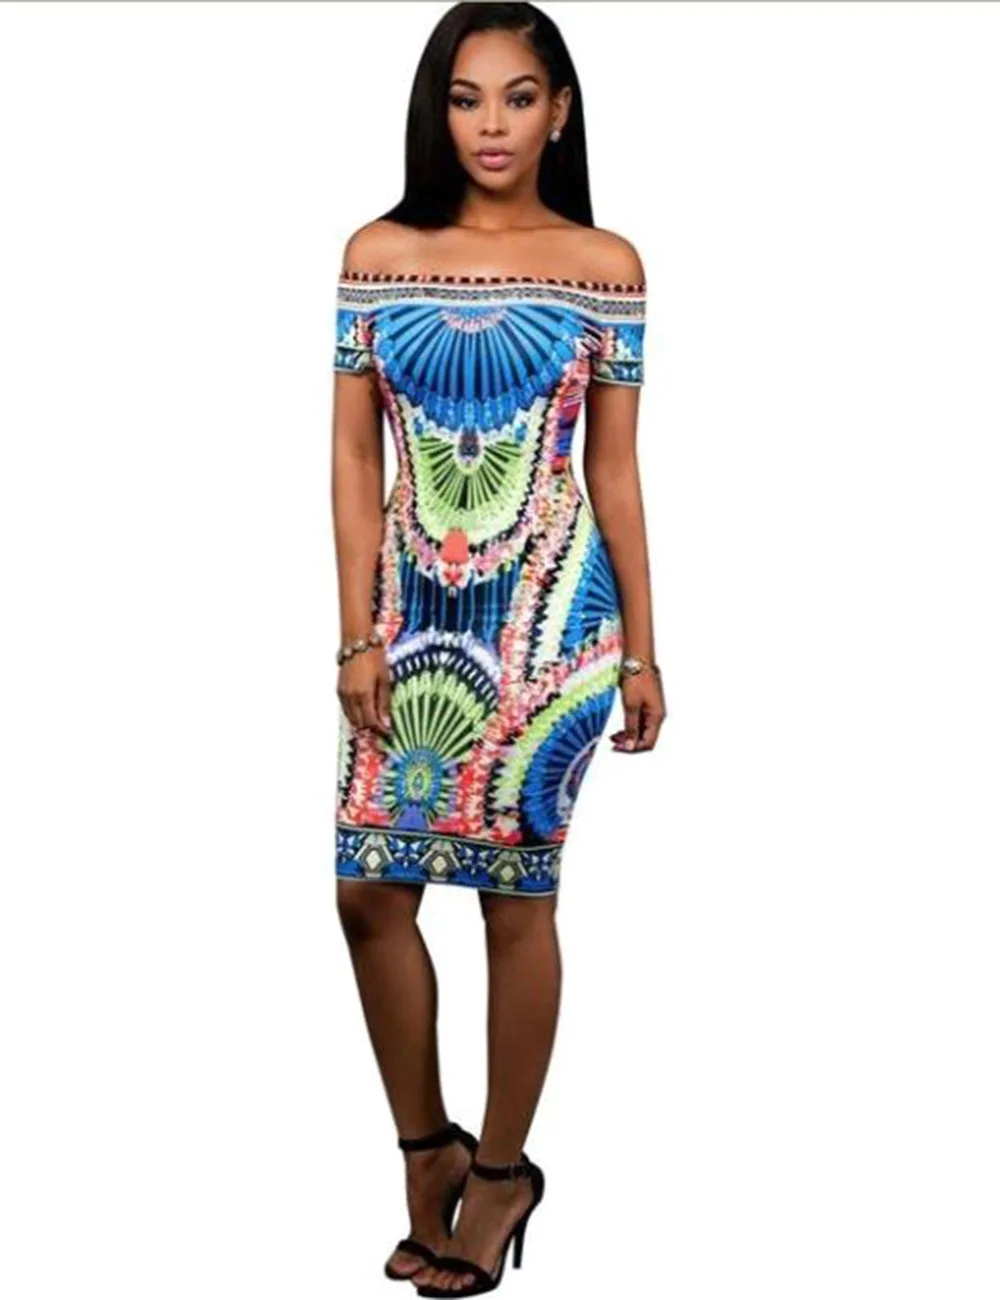 Fadzeco африканские платья для женщин с открытыми плечами сексуальные новые летние платья с этническим принтом платья с разрезом